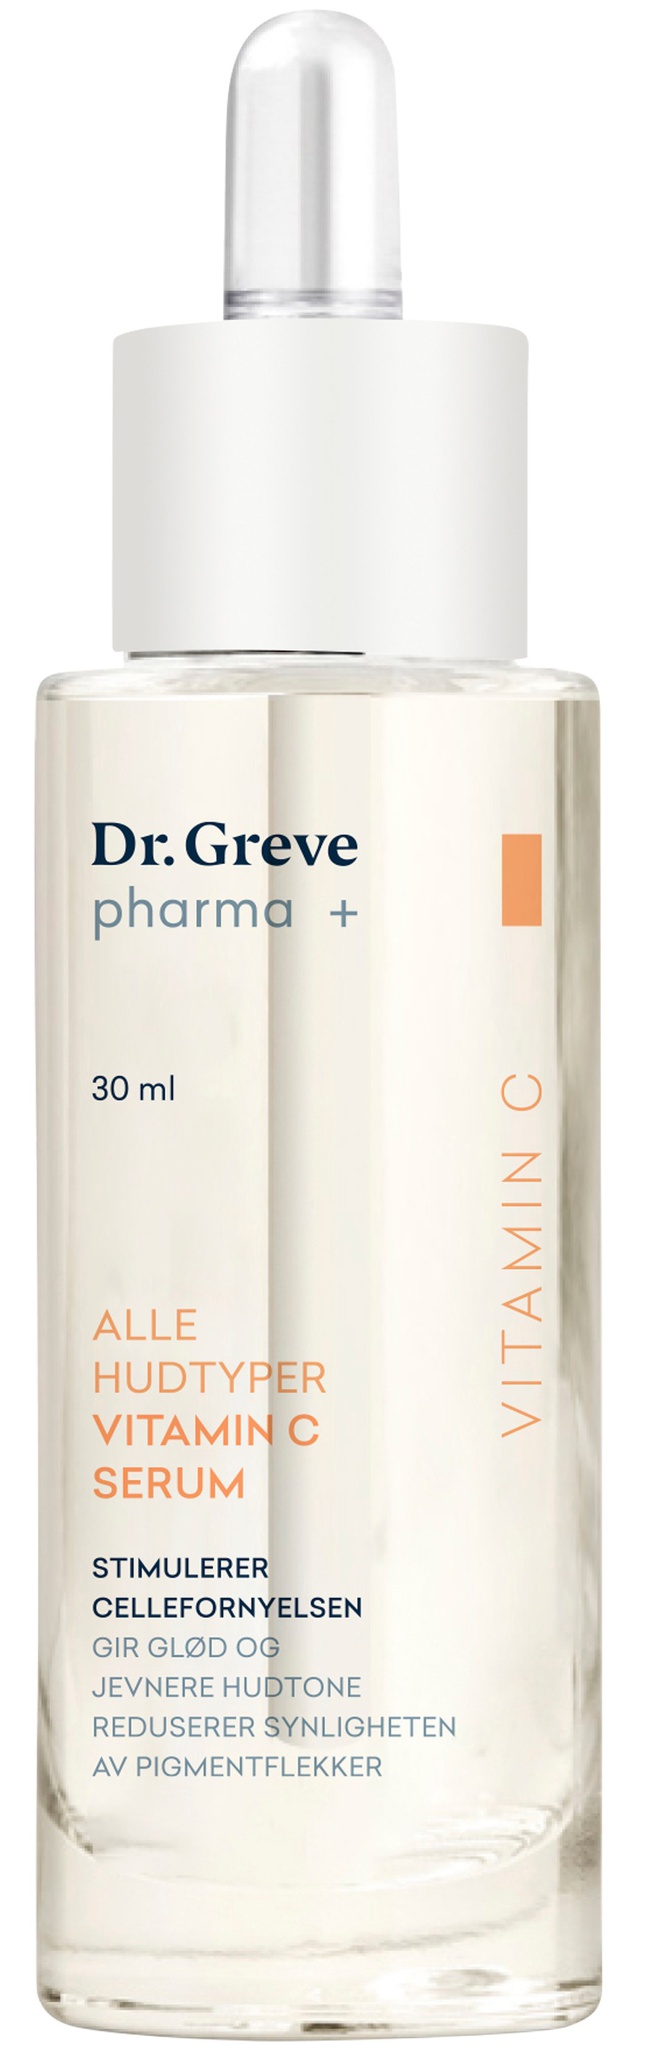 Dr. Greve pharma + Vitamin C Serum